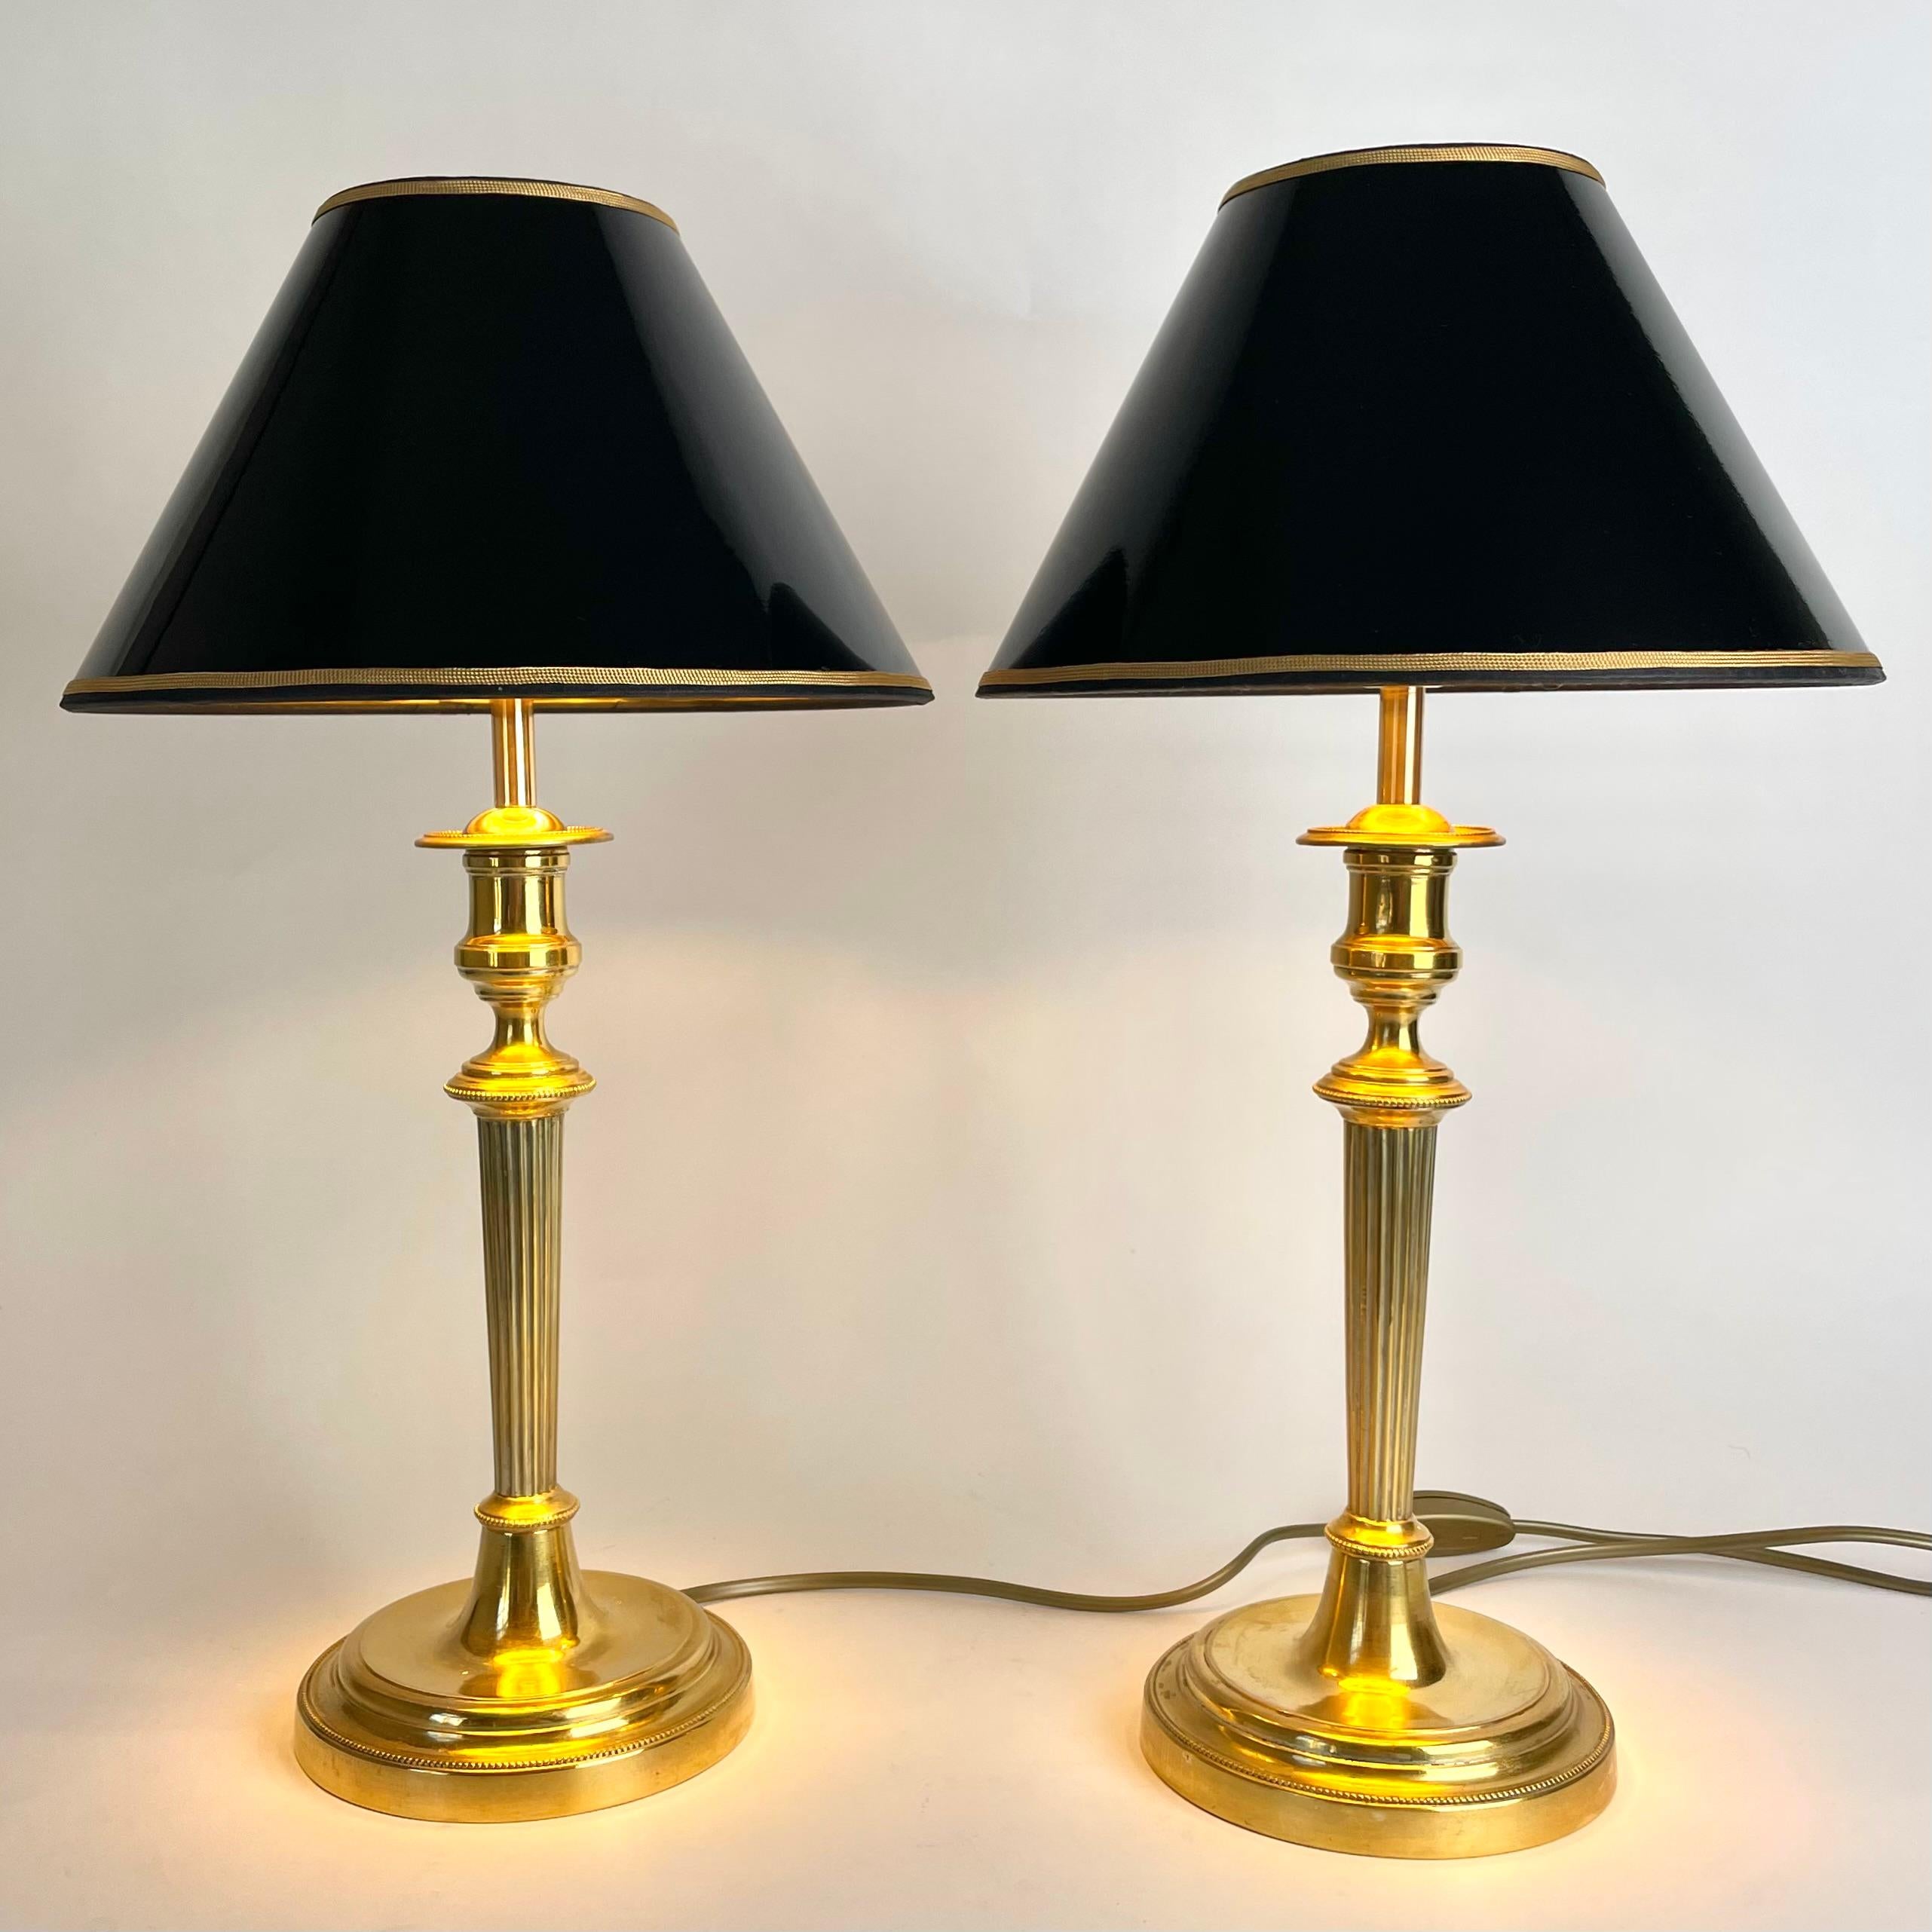 Belle paire de lampes de table Empire en bronze doré. Il s'agissait à l'origine d'une paire de chandeliers Empire des années 1820, transformés en lampes de table au début du 20e siècle.

Électricité refaite à neuf 

Nouveaux abat-jour en laque noire